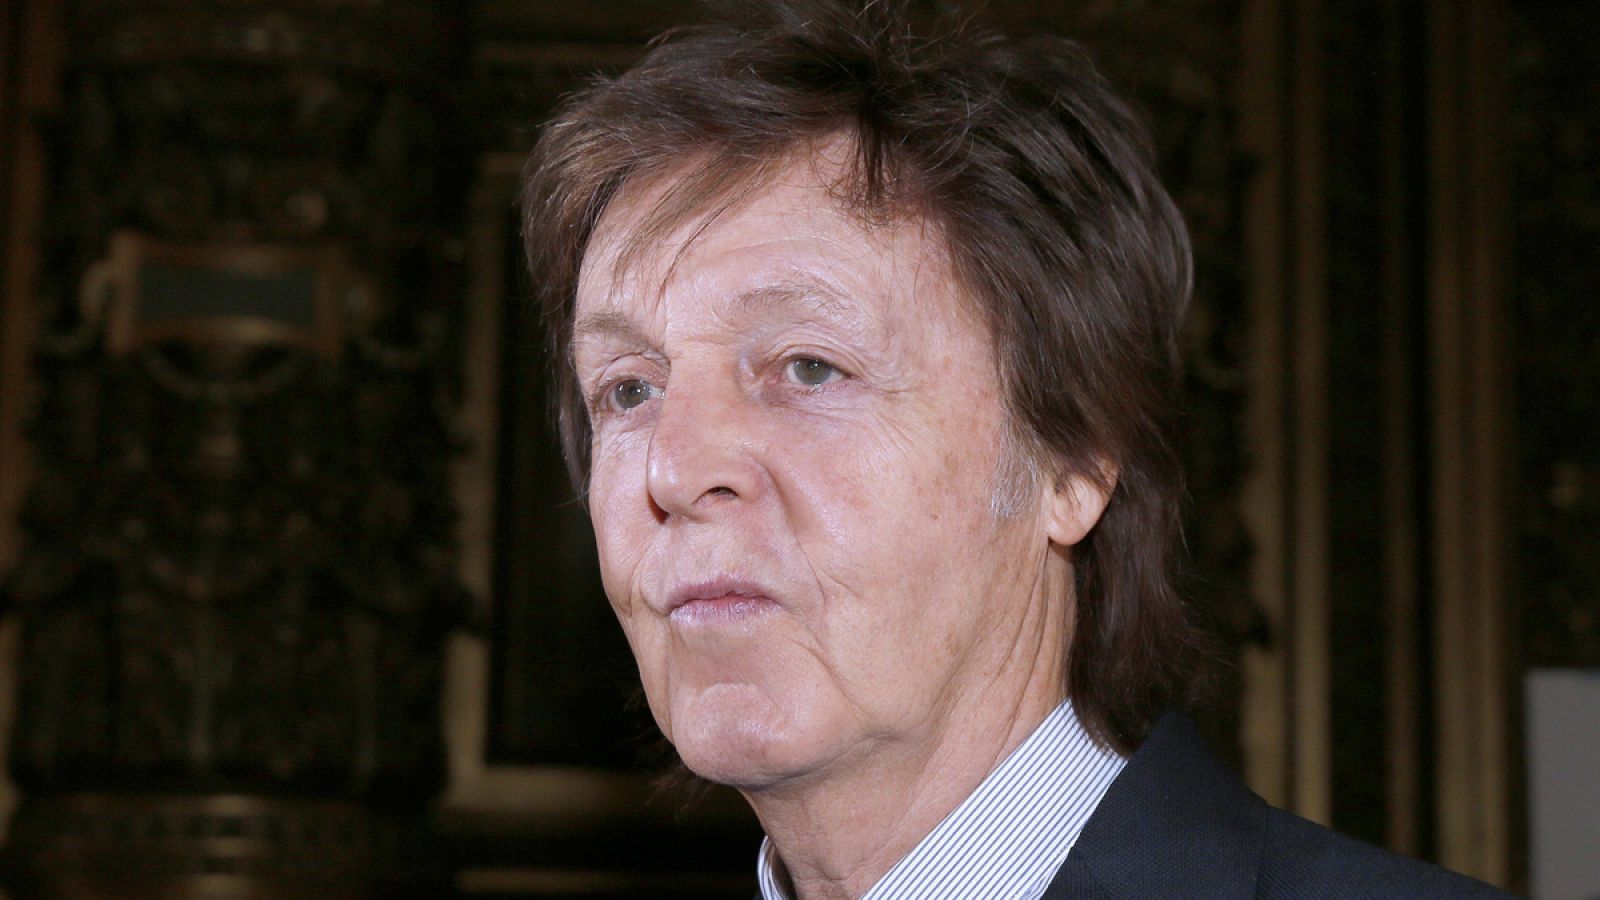 Paul McCartney en una imagen en Paris en 2016.